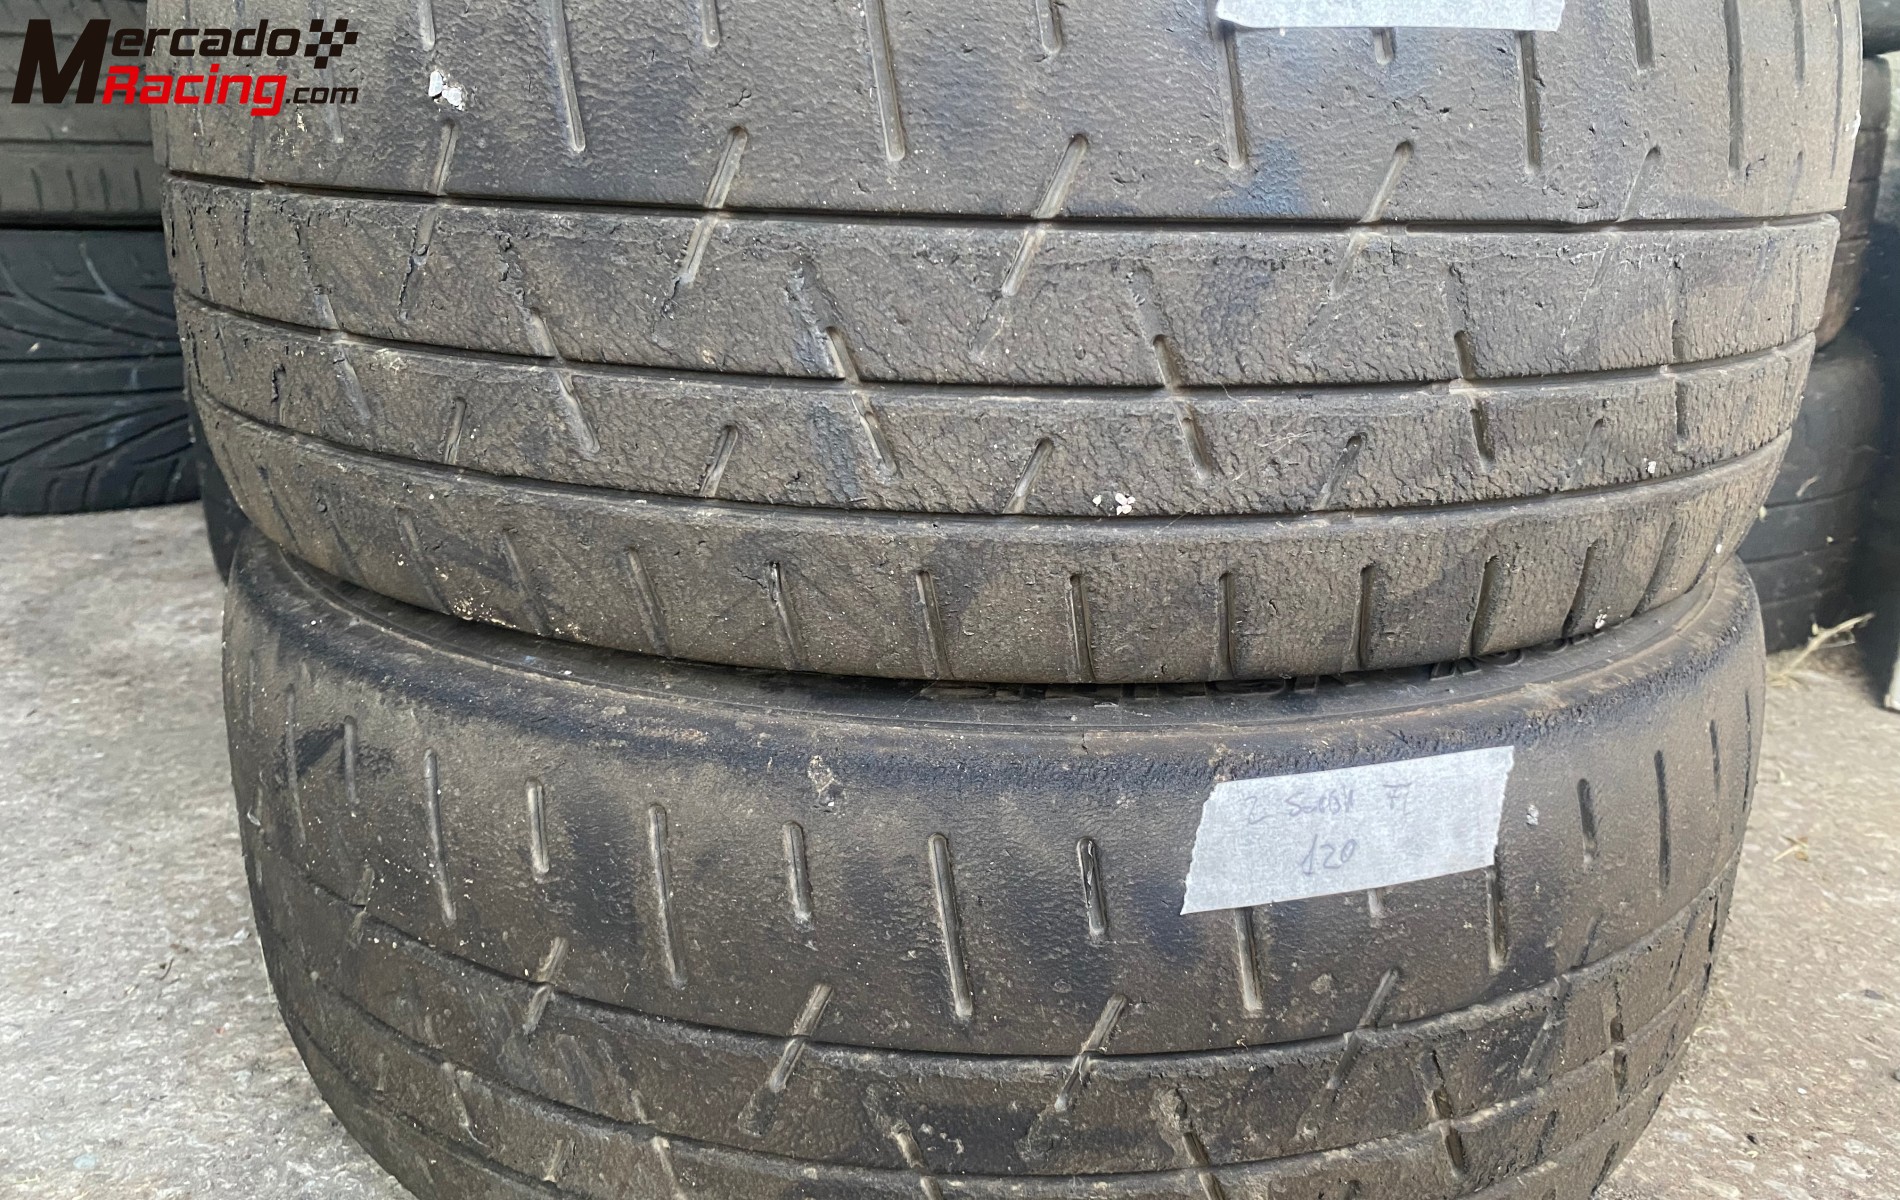 Neumáticos hankook varios precios